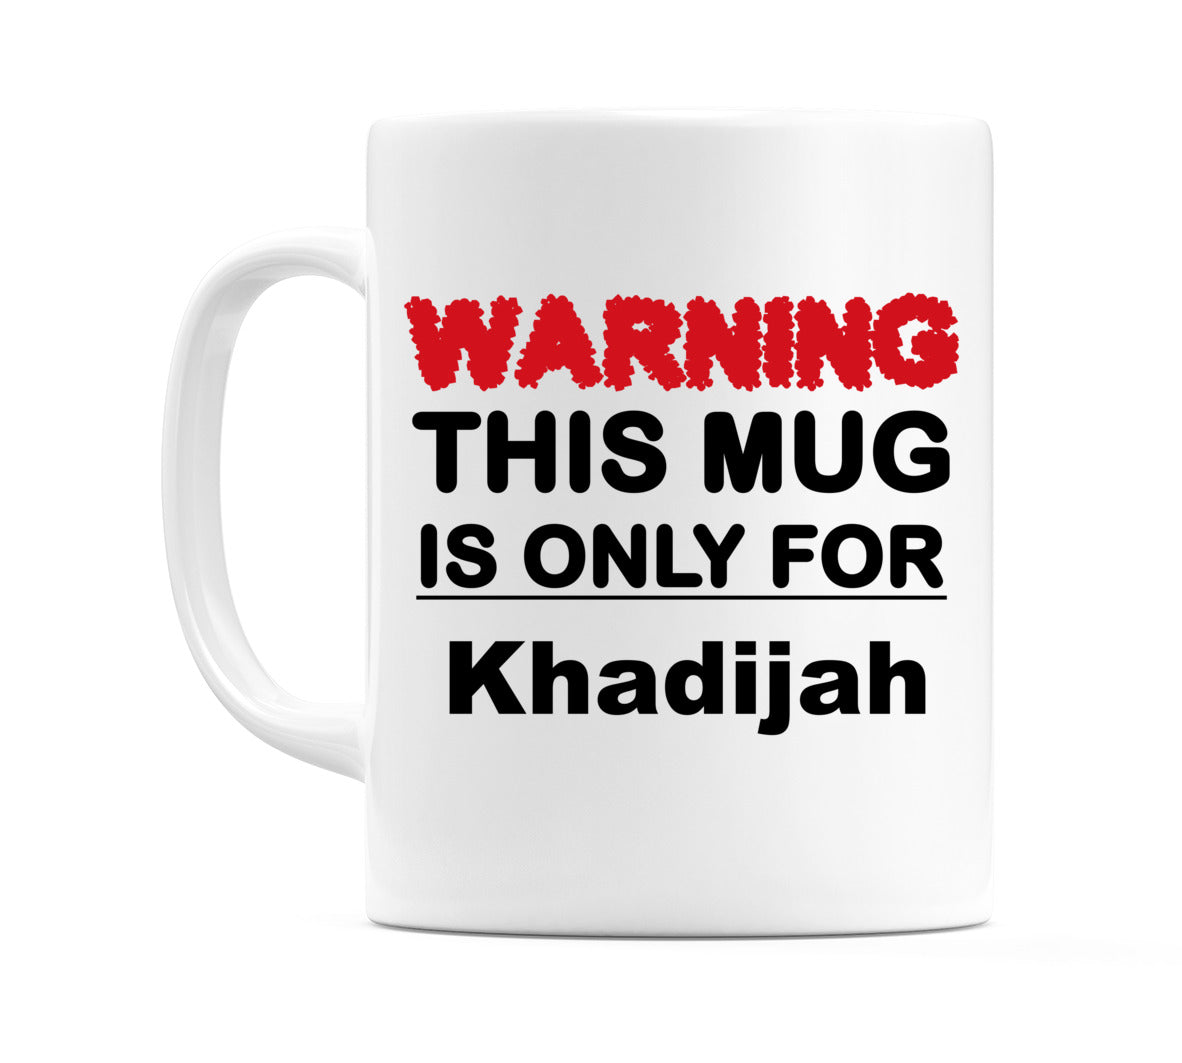 Warning This Mug is ONLY for Khadijah Mug